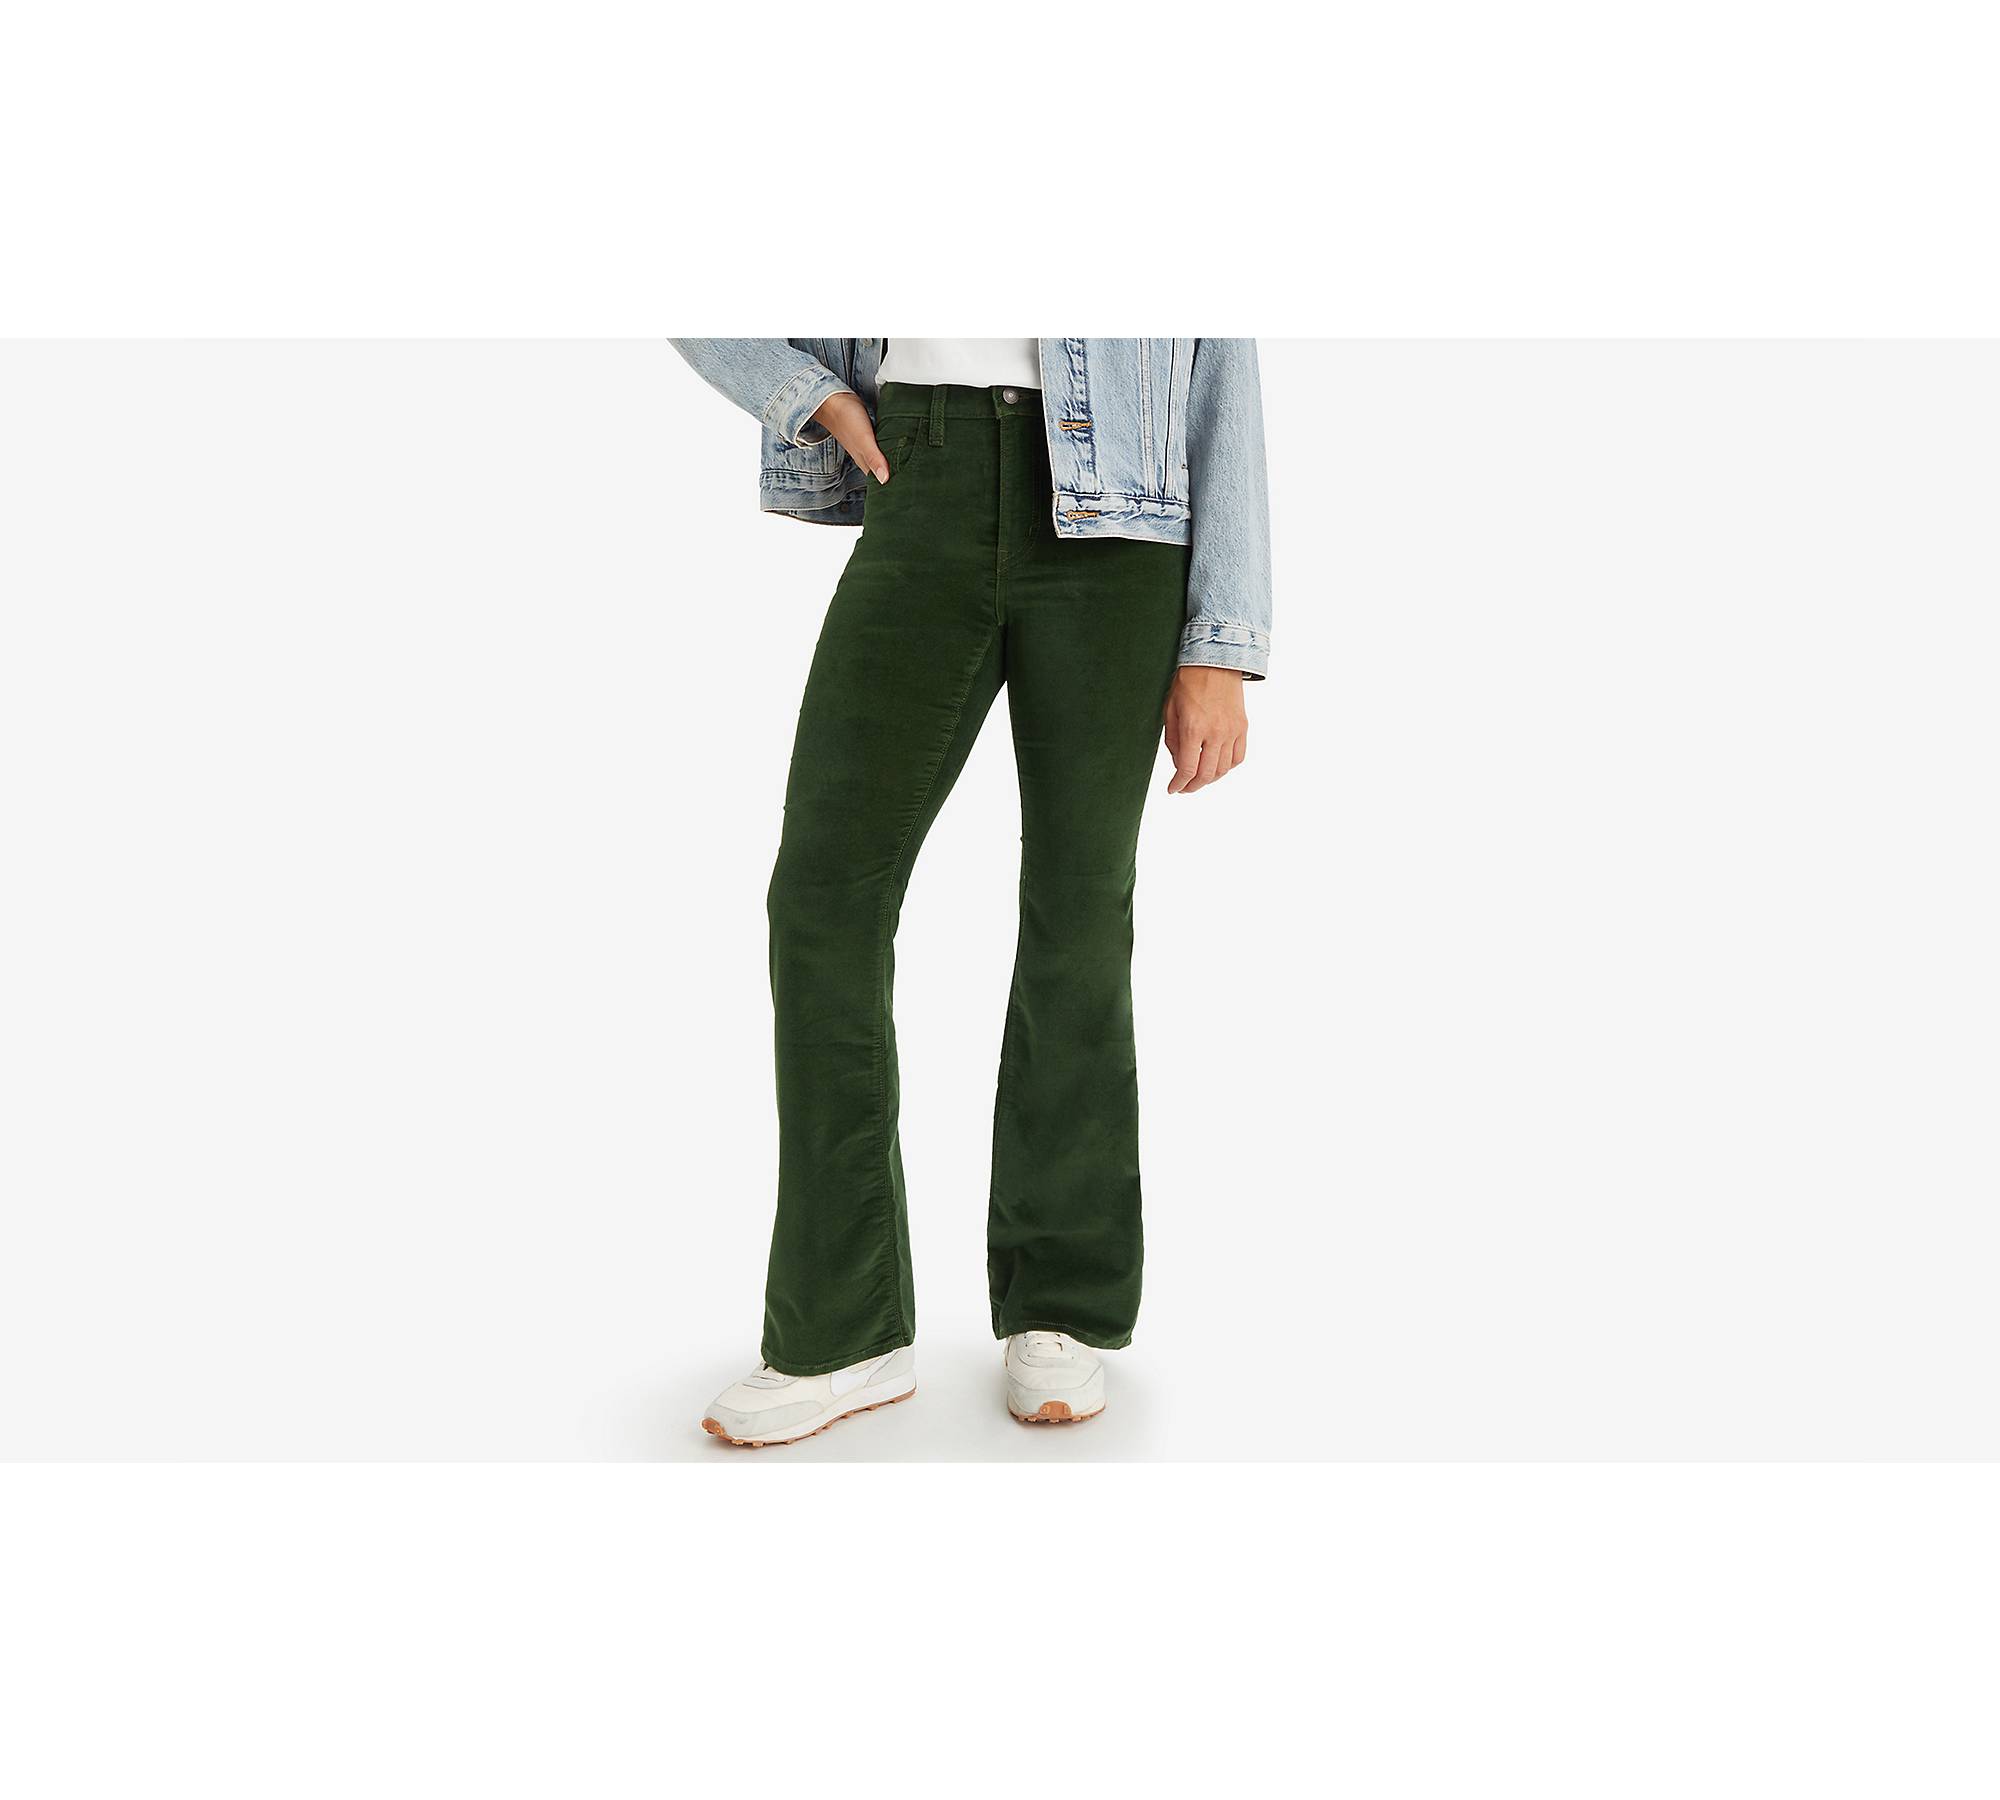 NEW Free People High Rise Green Corduroy Pants Sz 26 Z281-22